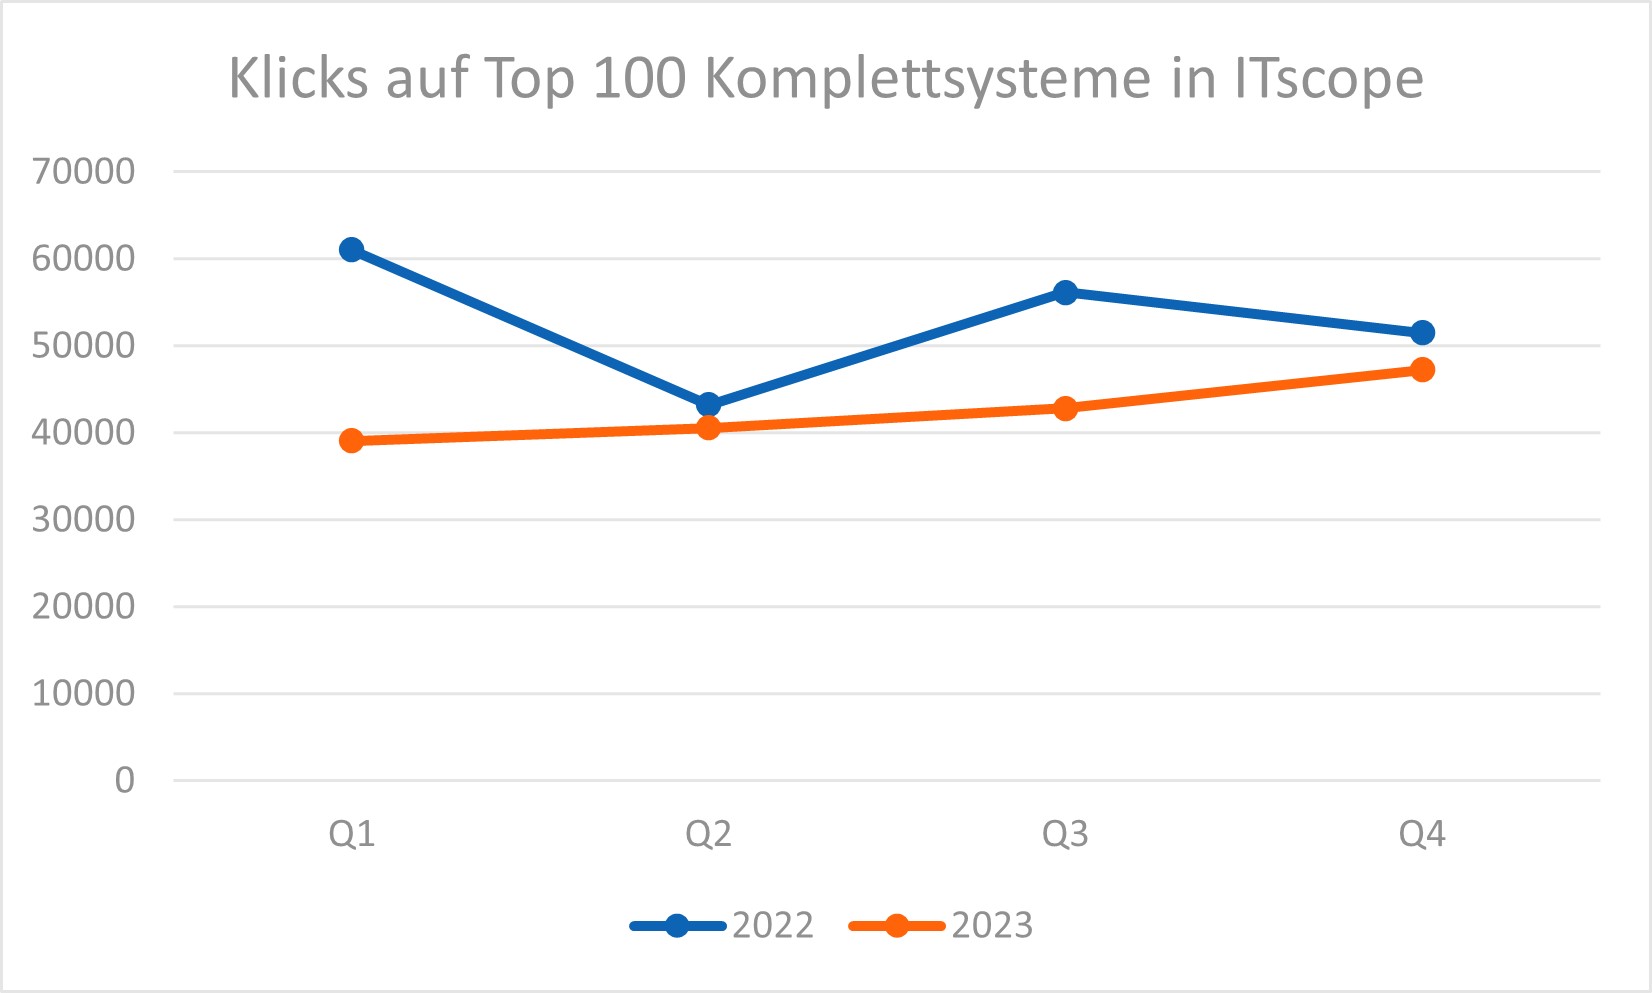 Klicks auf Top 100 PC-Komplettsysteme in ITscope im 4. Quartal 2023